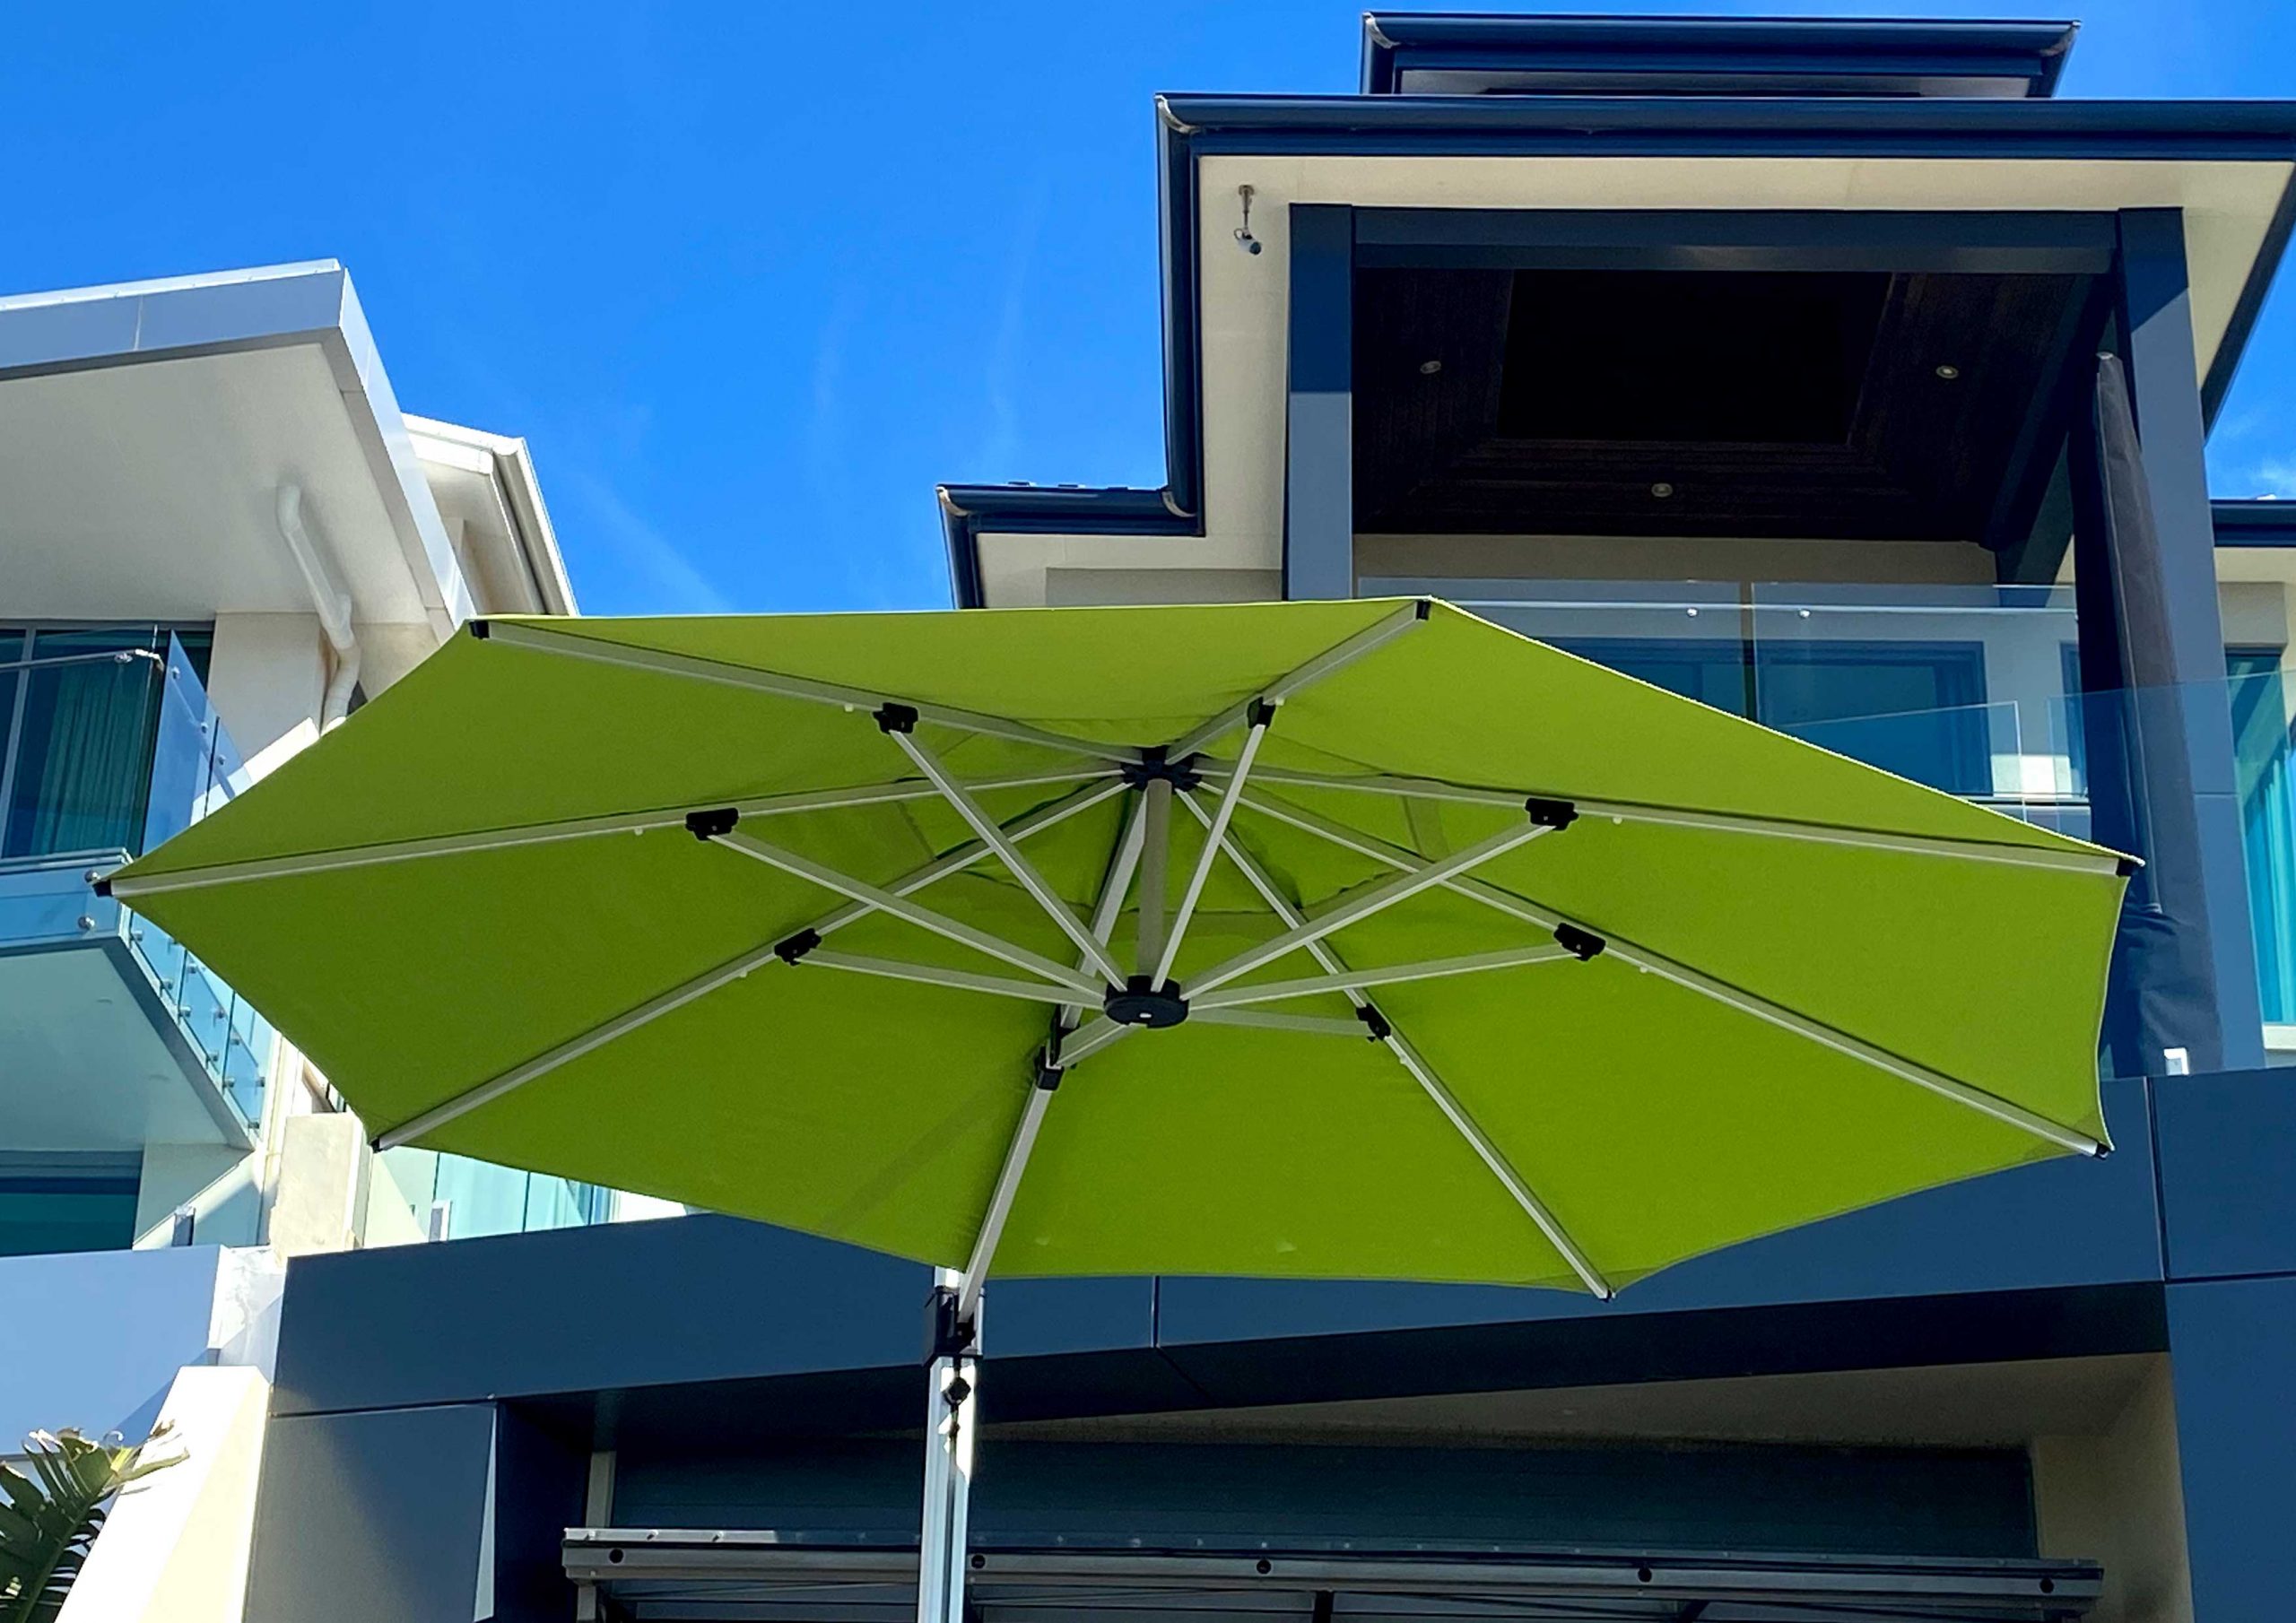 4m Octagonal Cantilever Umbrella